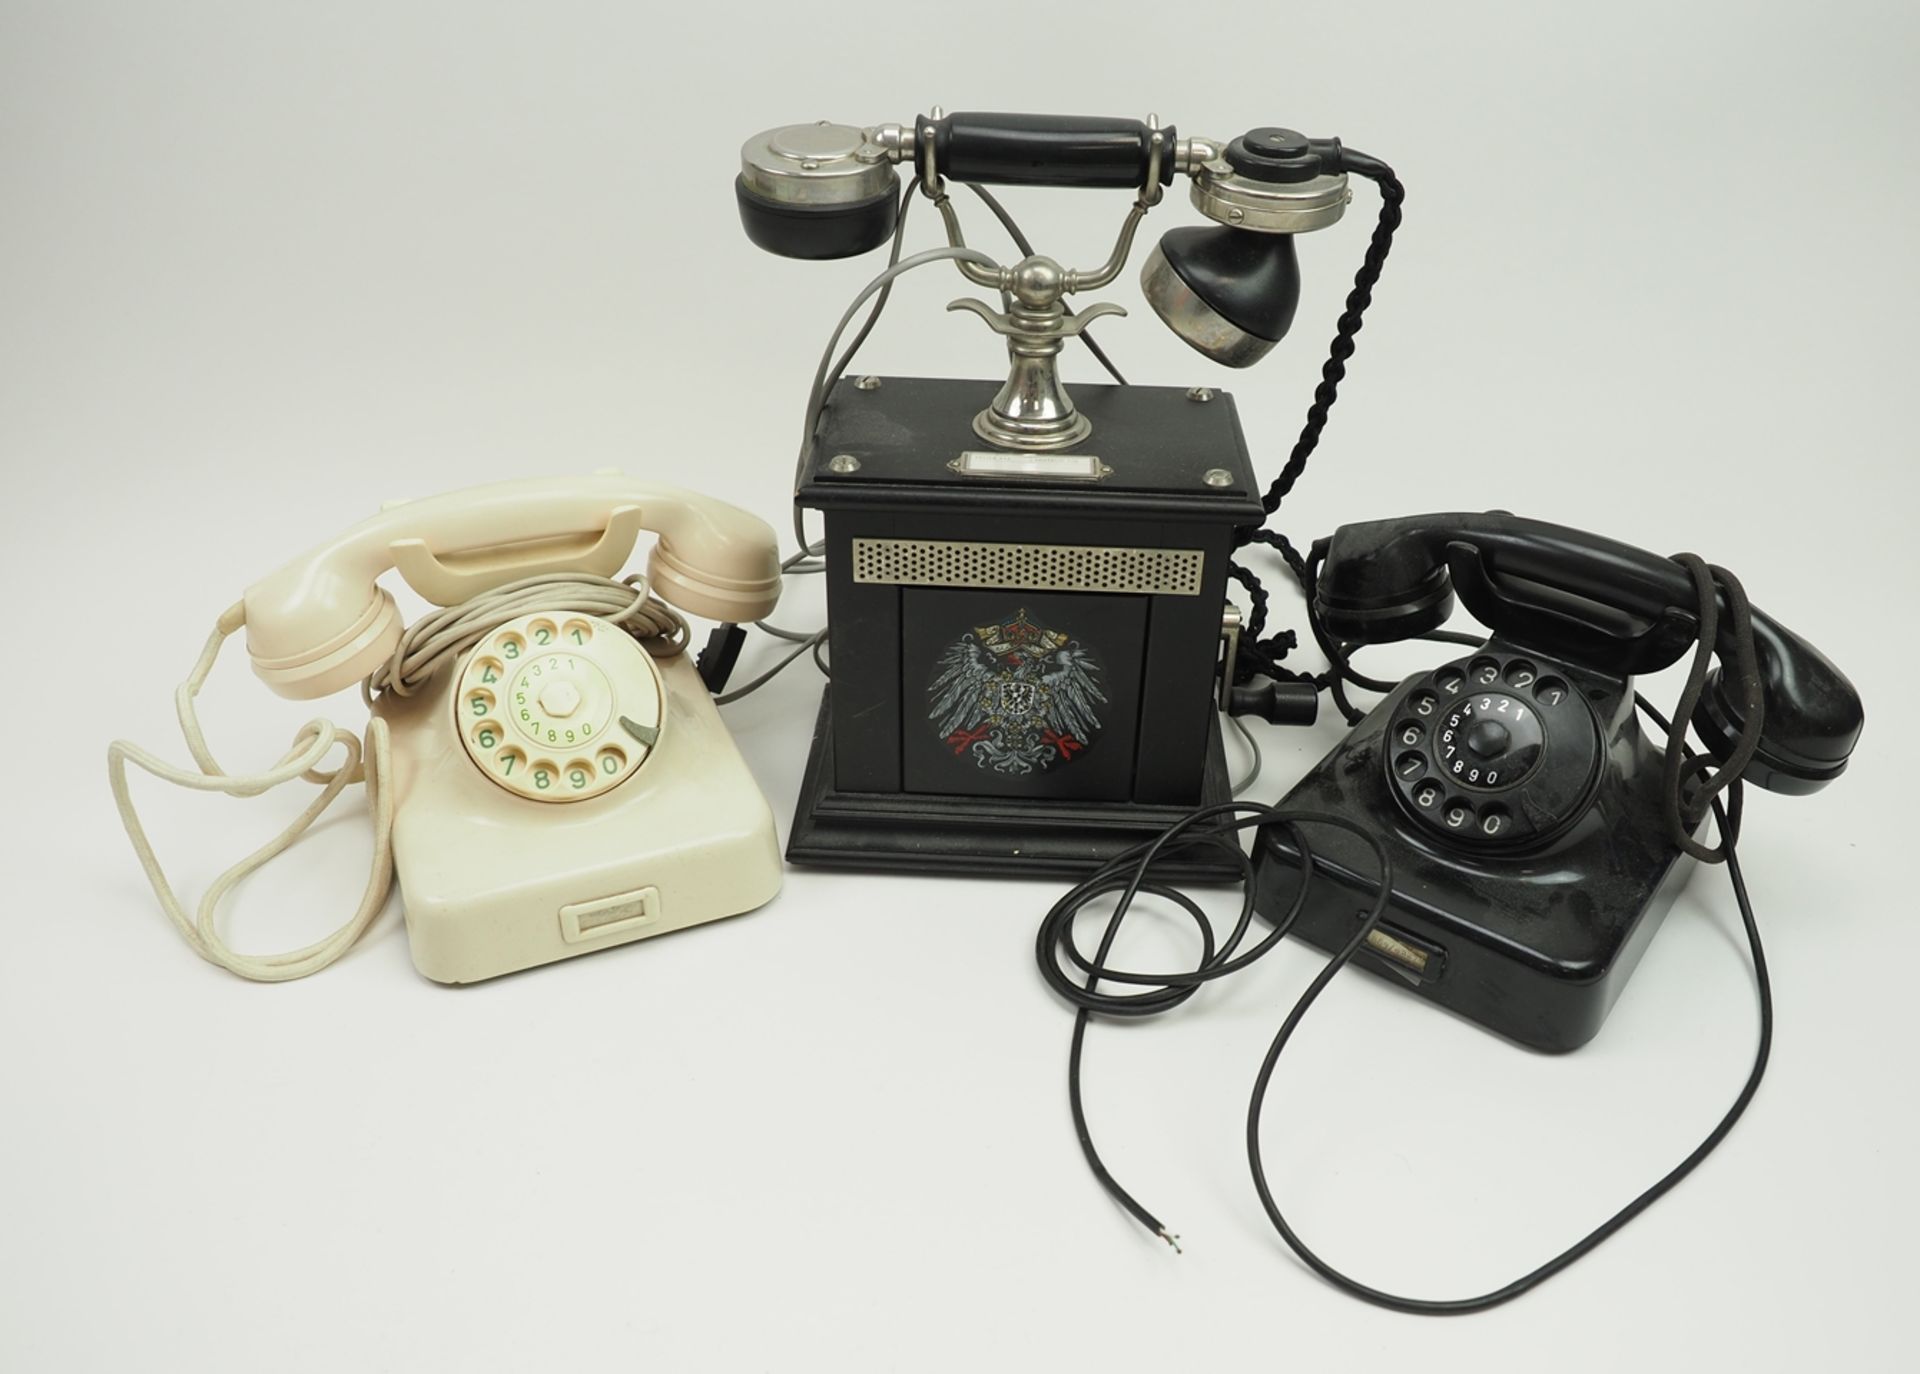 Lot Telefone / Amtsapparate - 3 Exemplare.